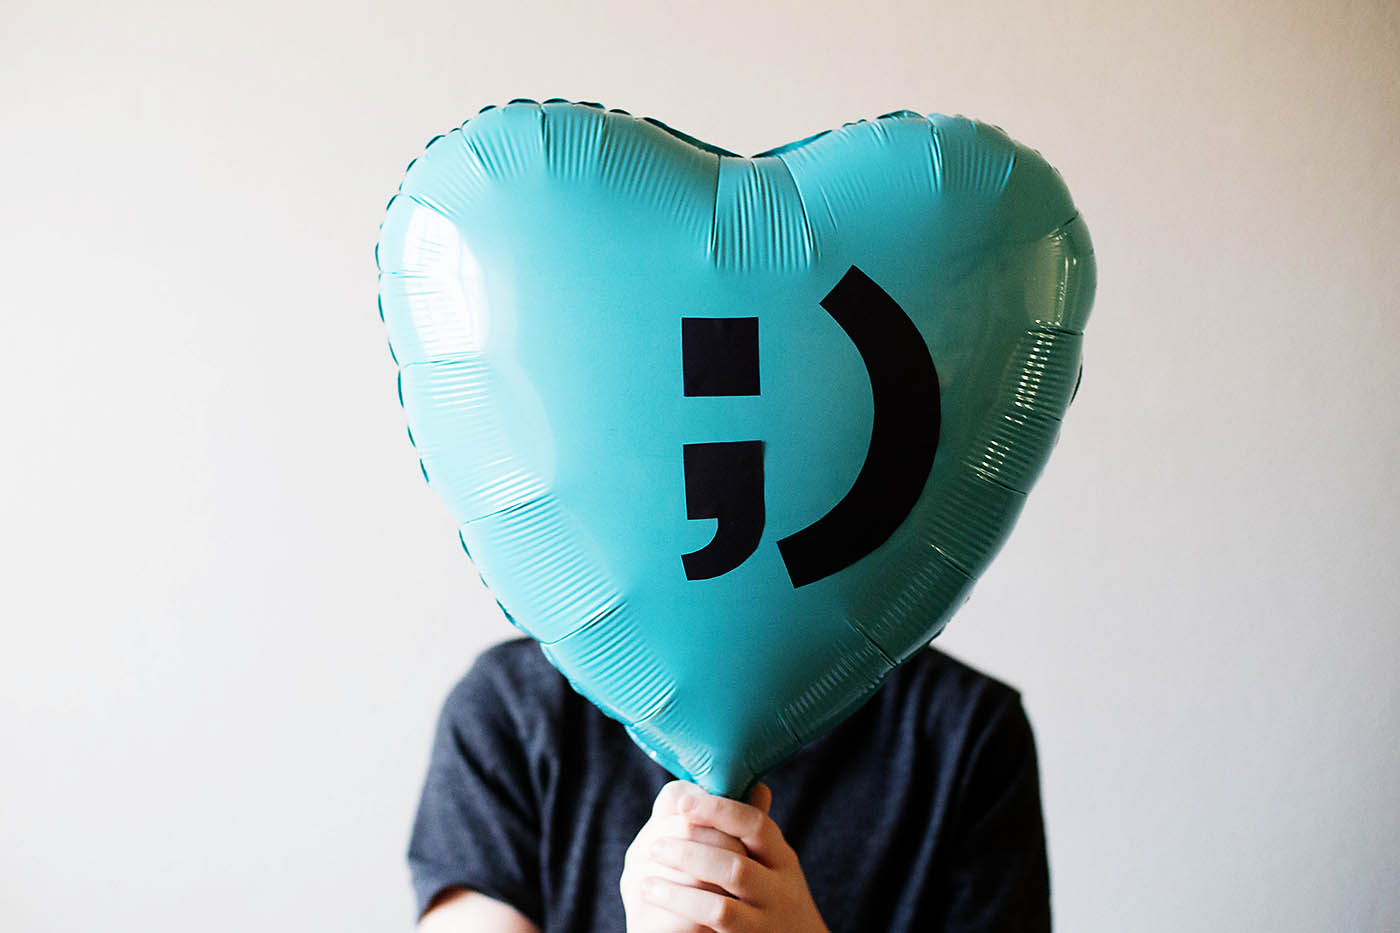 DIY Valentine Balloon Idea